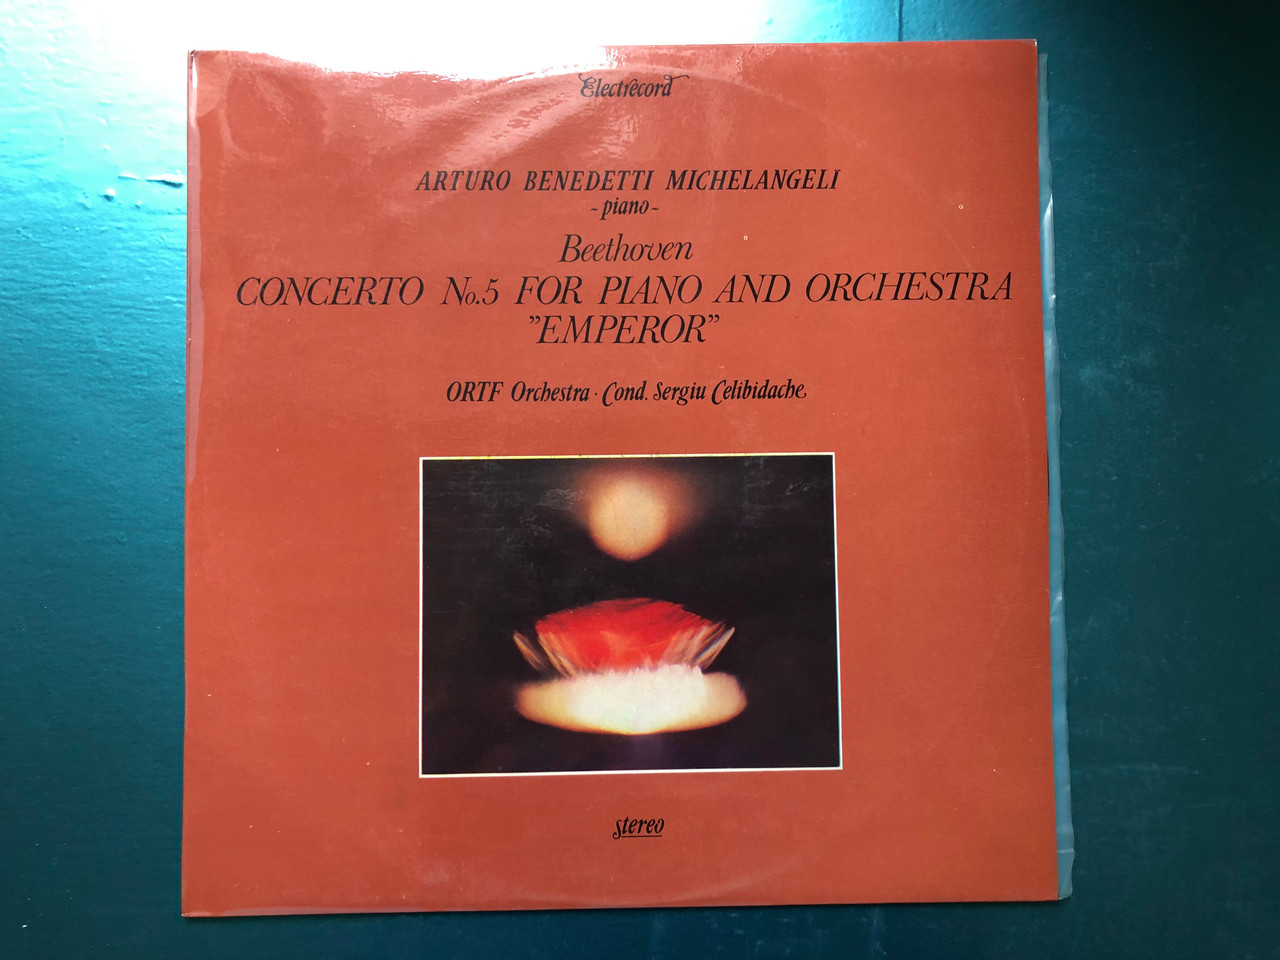 Arturo Benedetti Michelangeli (piano) - Beethoven - Concerto No.5 For Piano  And Orchestra "Emperor" / ORTF Orchestra, Cond. Sergiu Celibidache /  Electrecord LP Stereo / ST-ECE 02600 - bibleinmylanguage